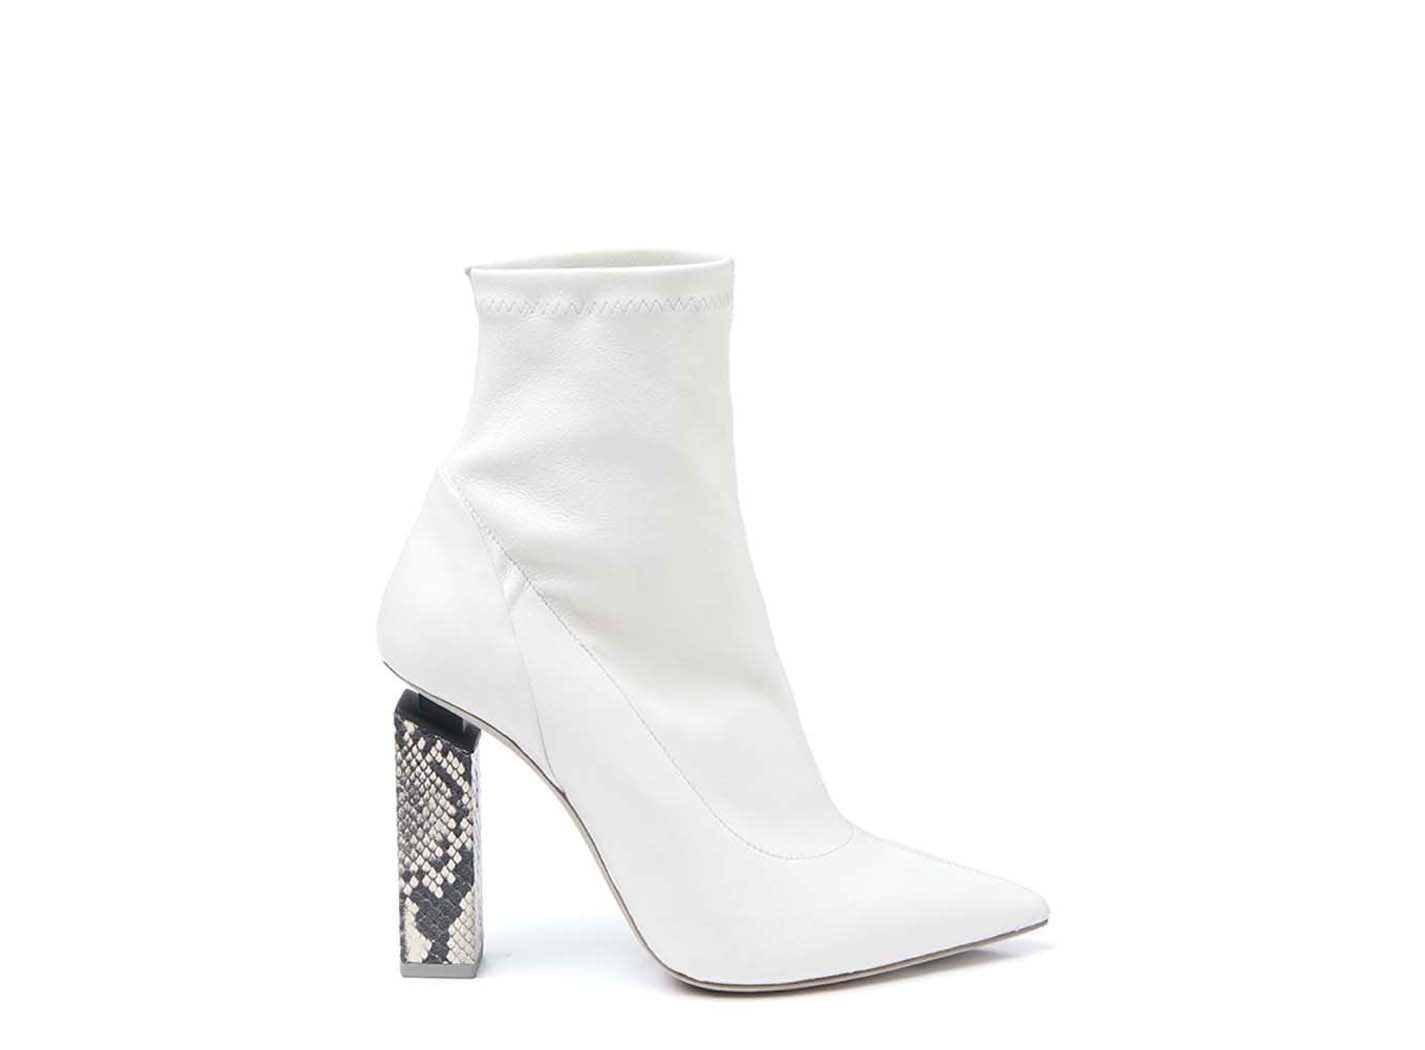 black and white snakeskin heels